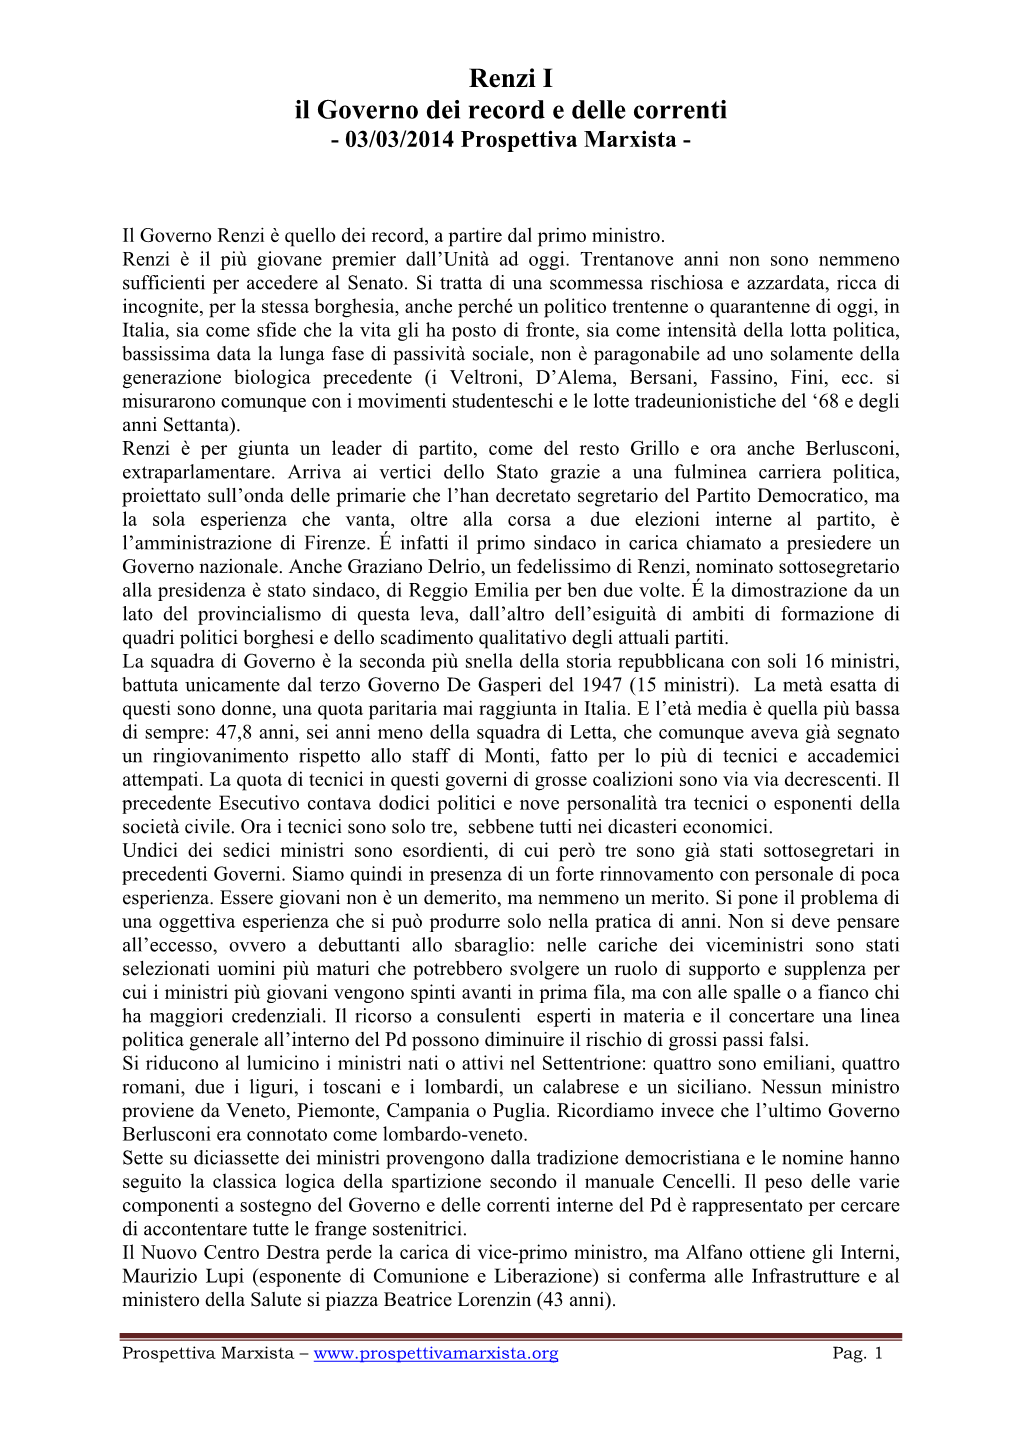 Renzi I Il Governo Dei Record E Delle Correnti - 03/03/2014 Prospettiva Marxista